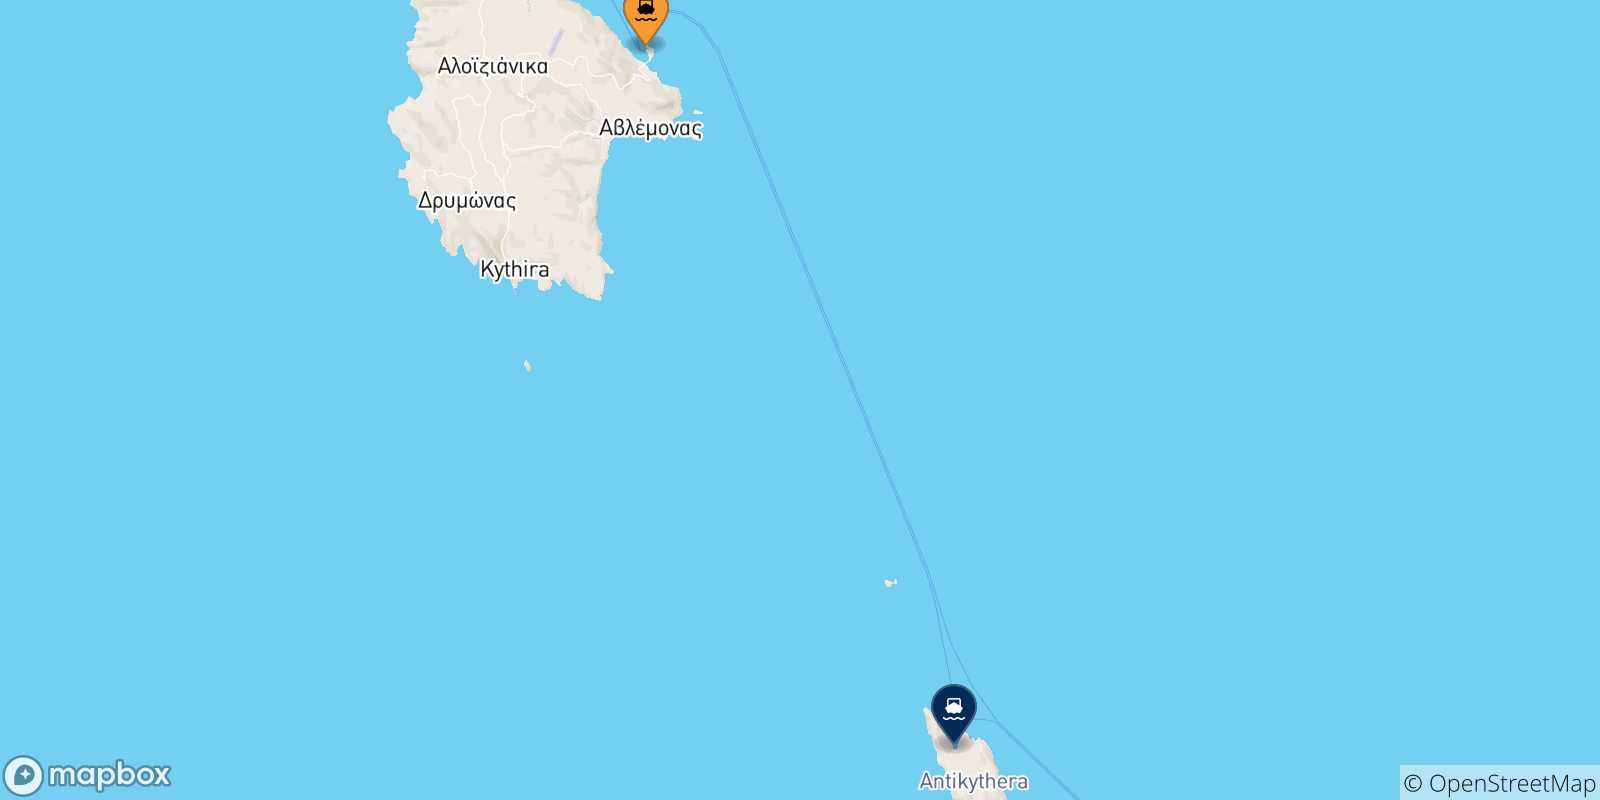 Mappa delle possibili rotte tra Kythira e le Isole Ionie